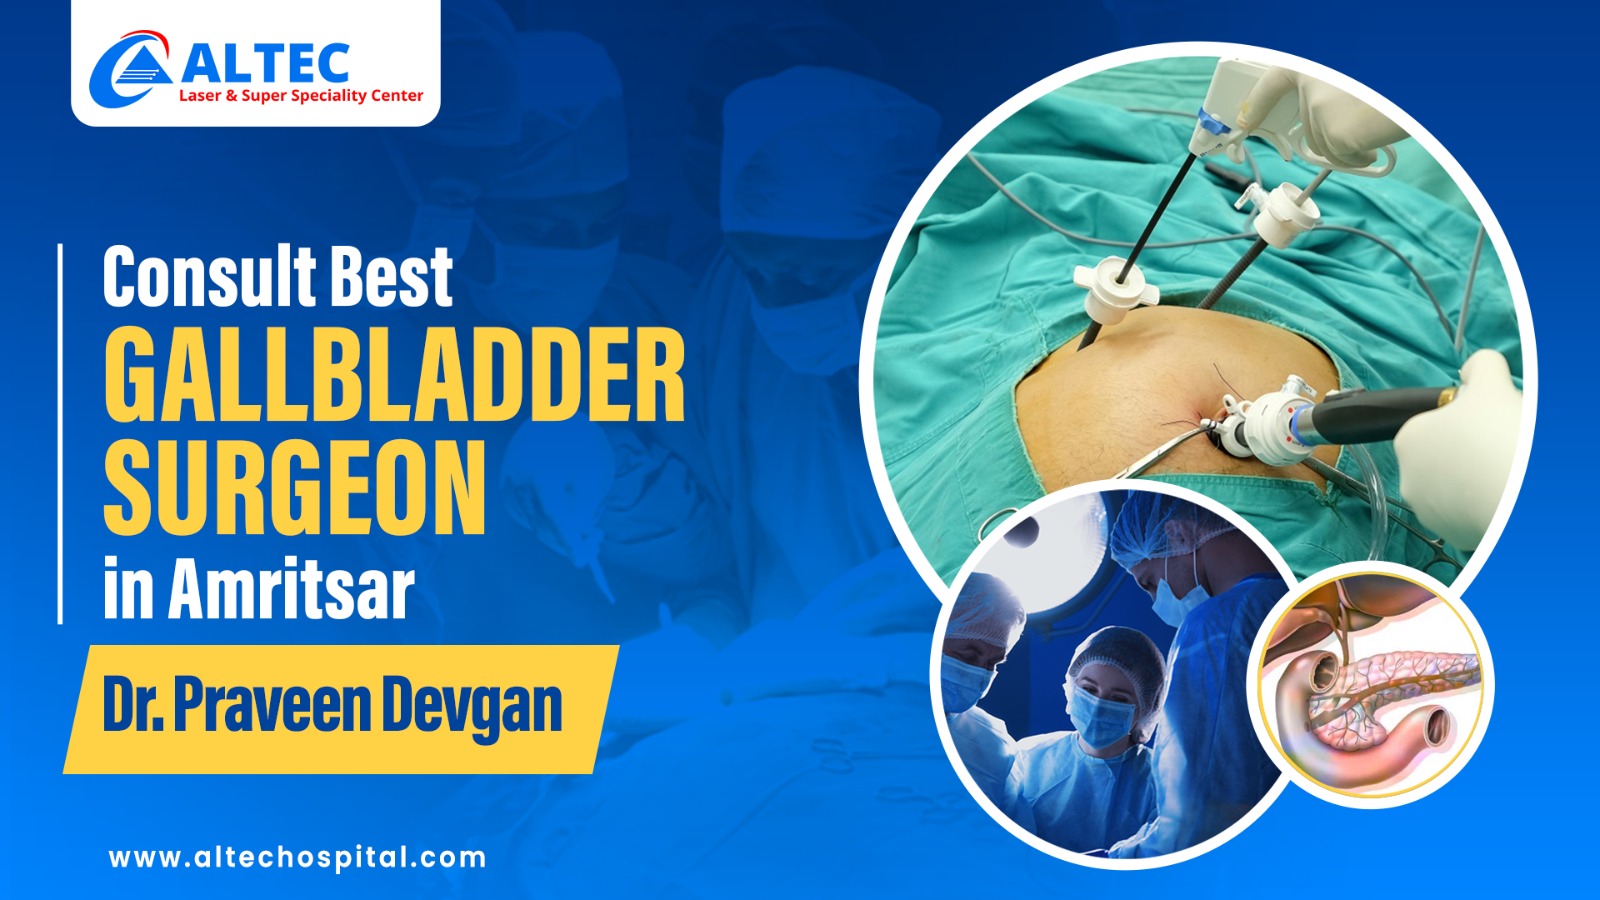 Consult Best GallBladder Surgeon in Amritsar - Dr. Praveen Devgan